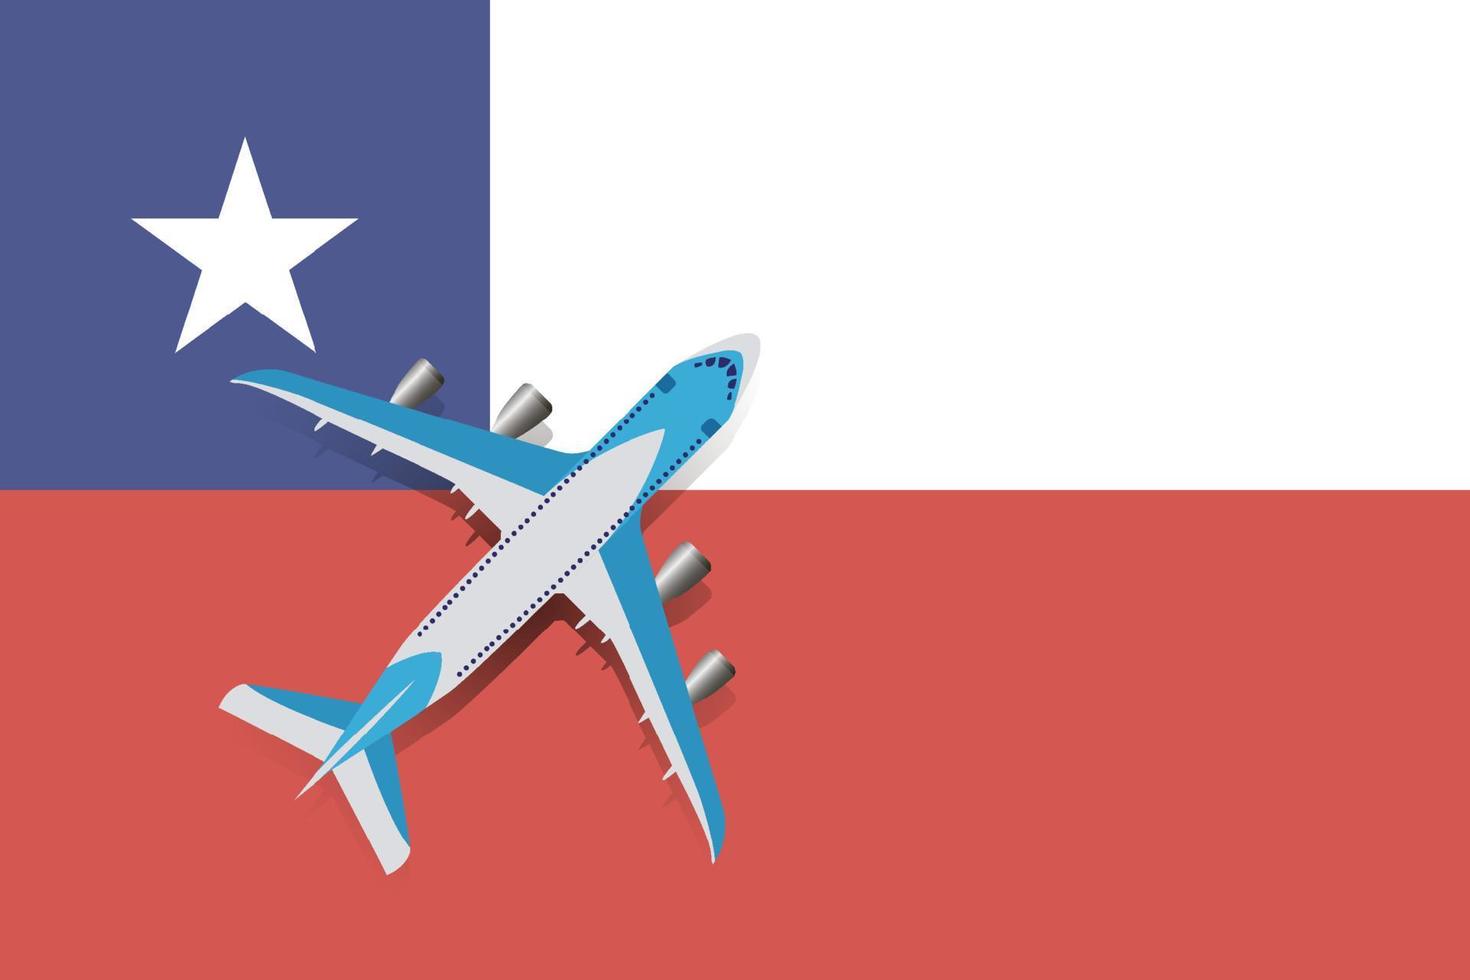 ilustração em vetor de um avião de passageiros sobrevoando a bandeira do chile. conceito de turismo e viagens